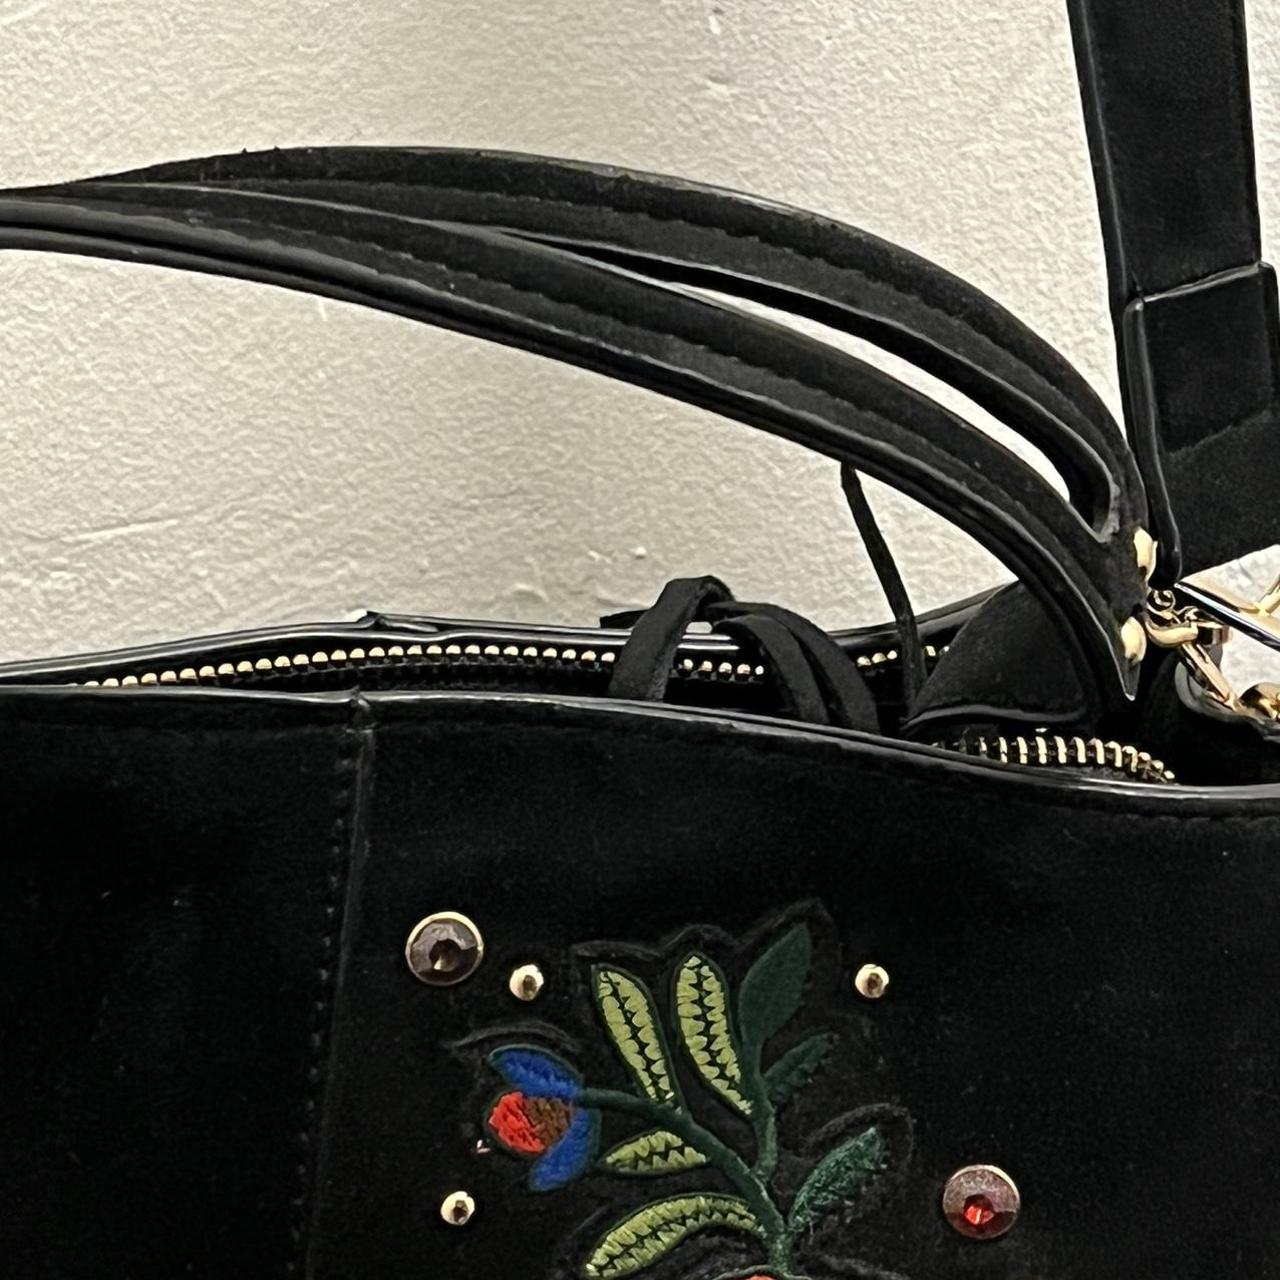 Vintage Floral suede messenger bag with a smaller